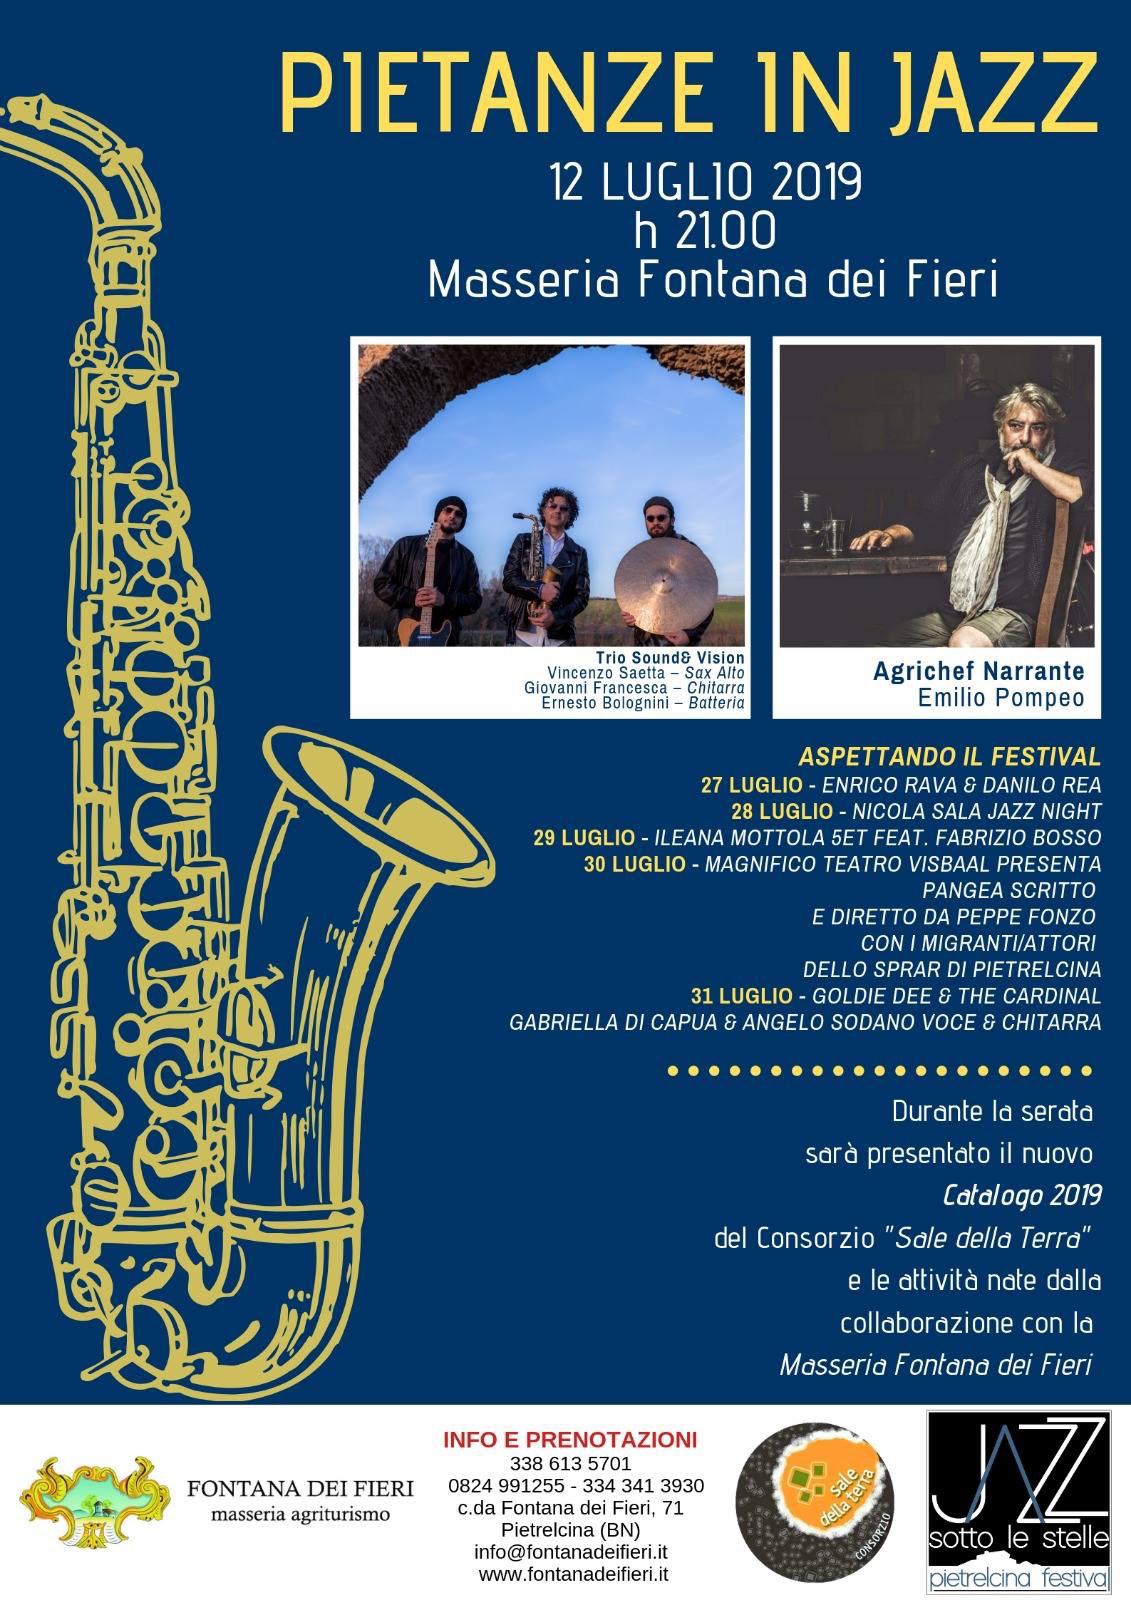 Anteprima del prossimo Jazz Festival con ‘Pietanze in jazz’. Venerdì 12 luglio a Pietrelcina (BN)